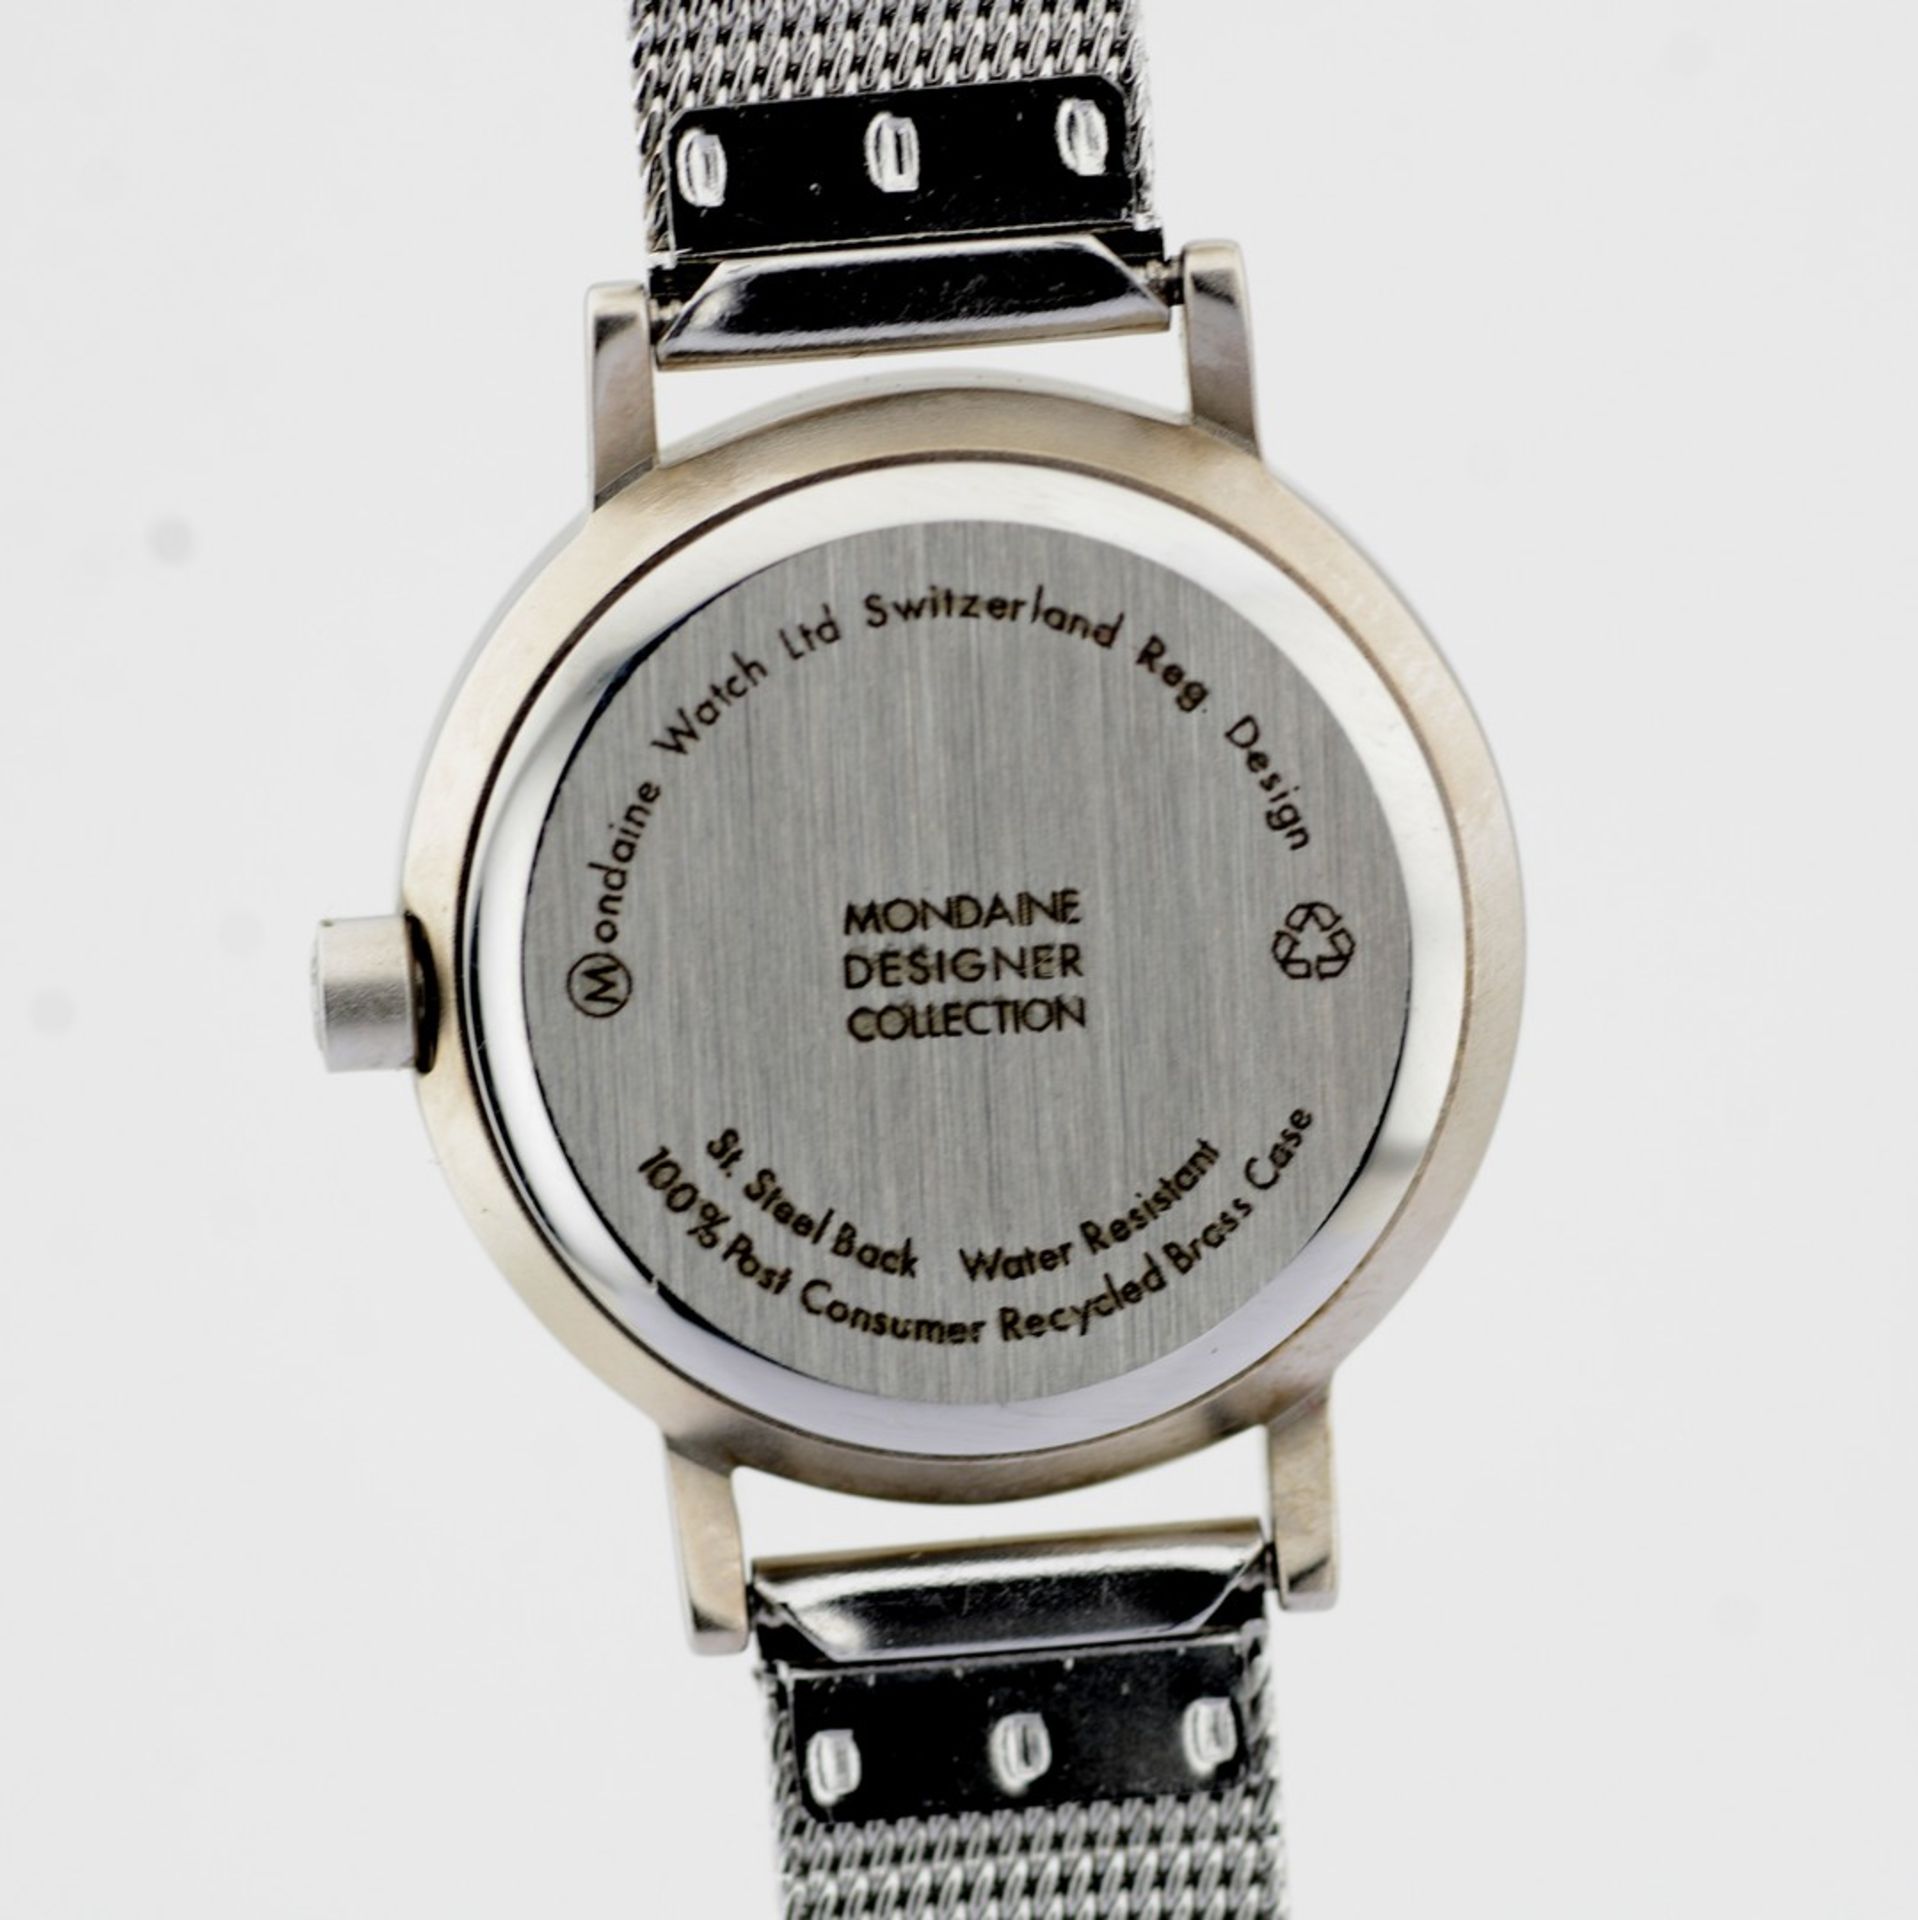 Mondaine / Swiss Designer Collection - (Unworn) Lady's Brass Wrist Watch - Image 6 of 9